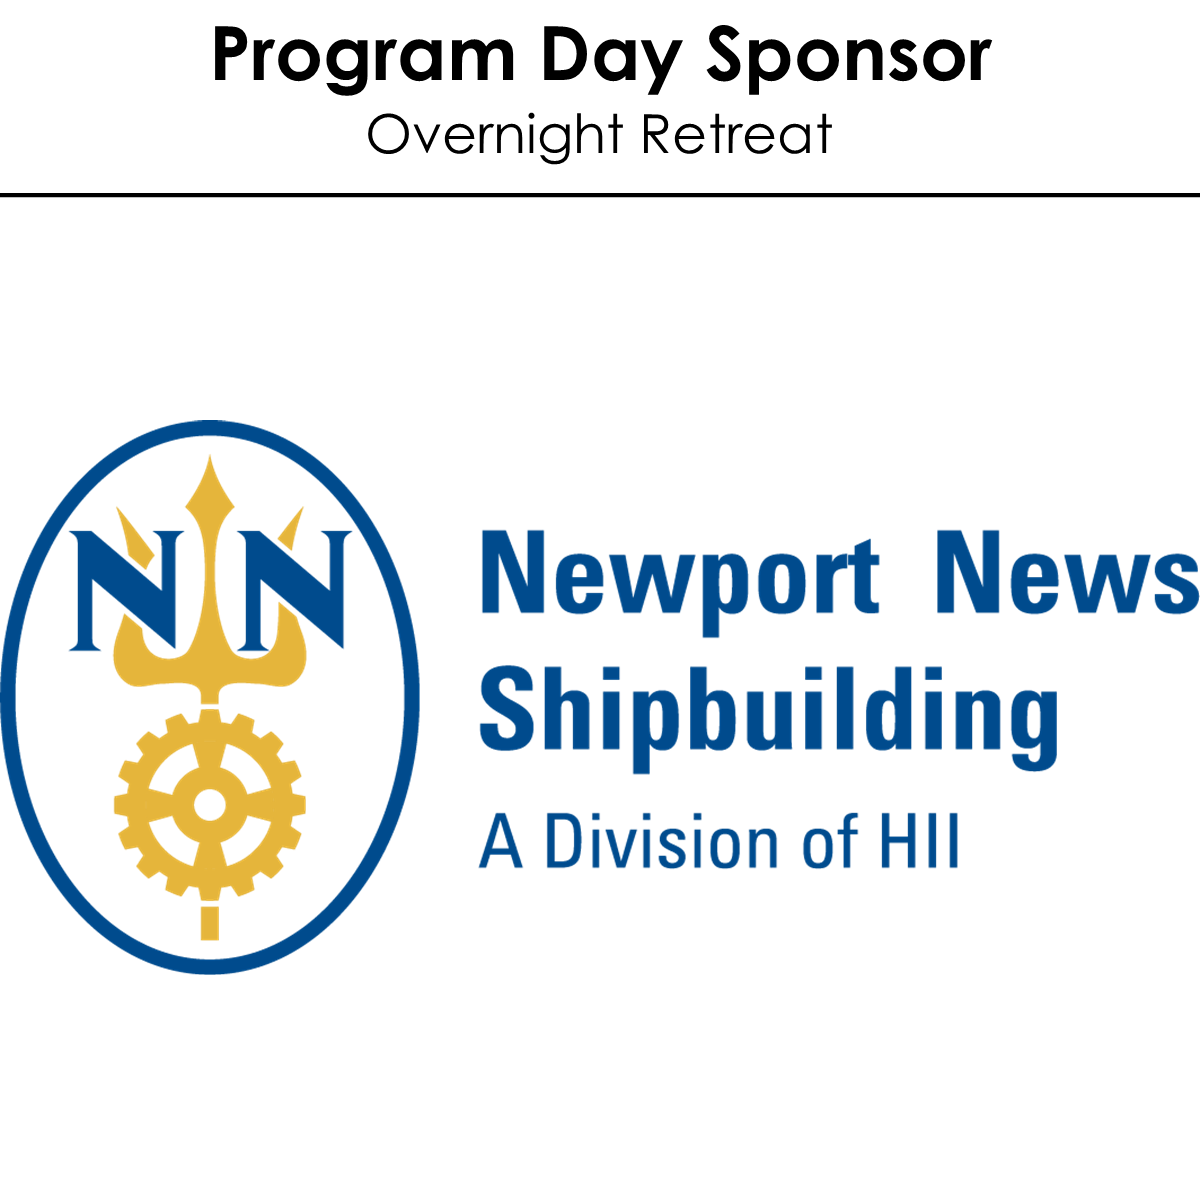 Newport News Shipbuilding - A Division of HII